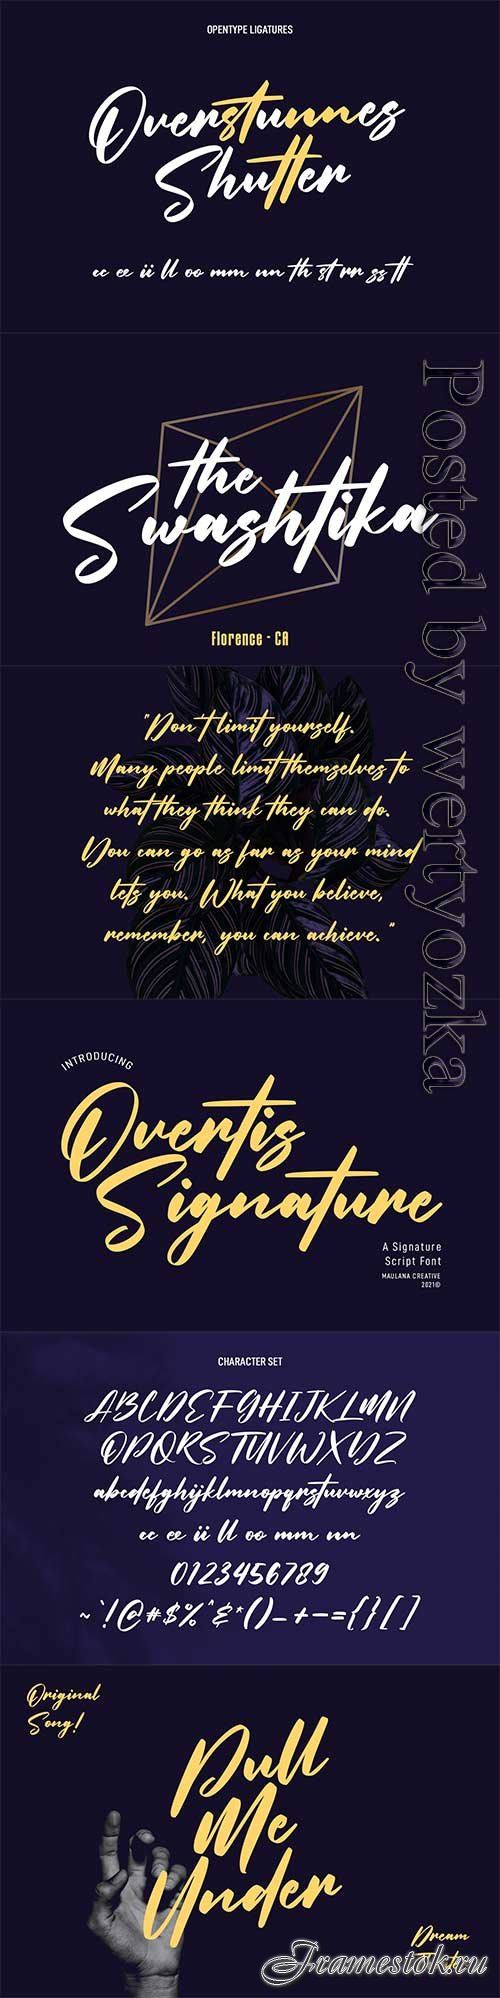 Overtis Signature Script Font 6361148